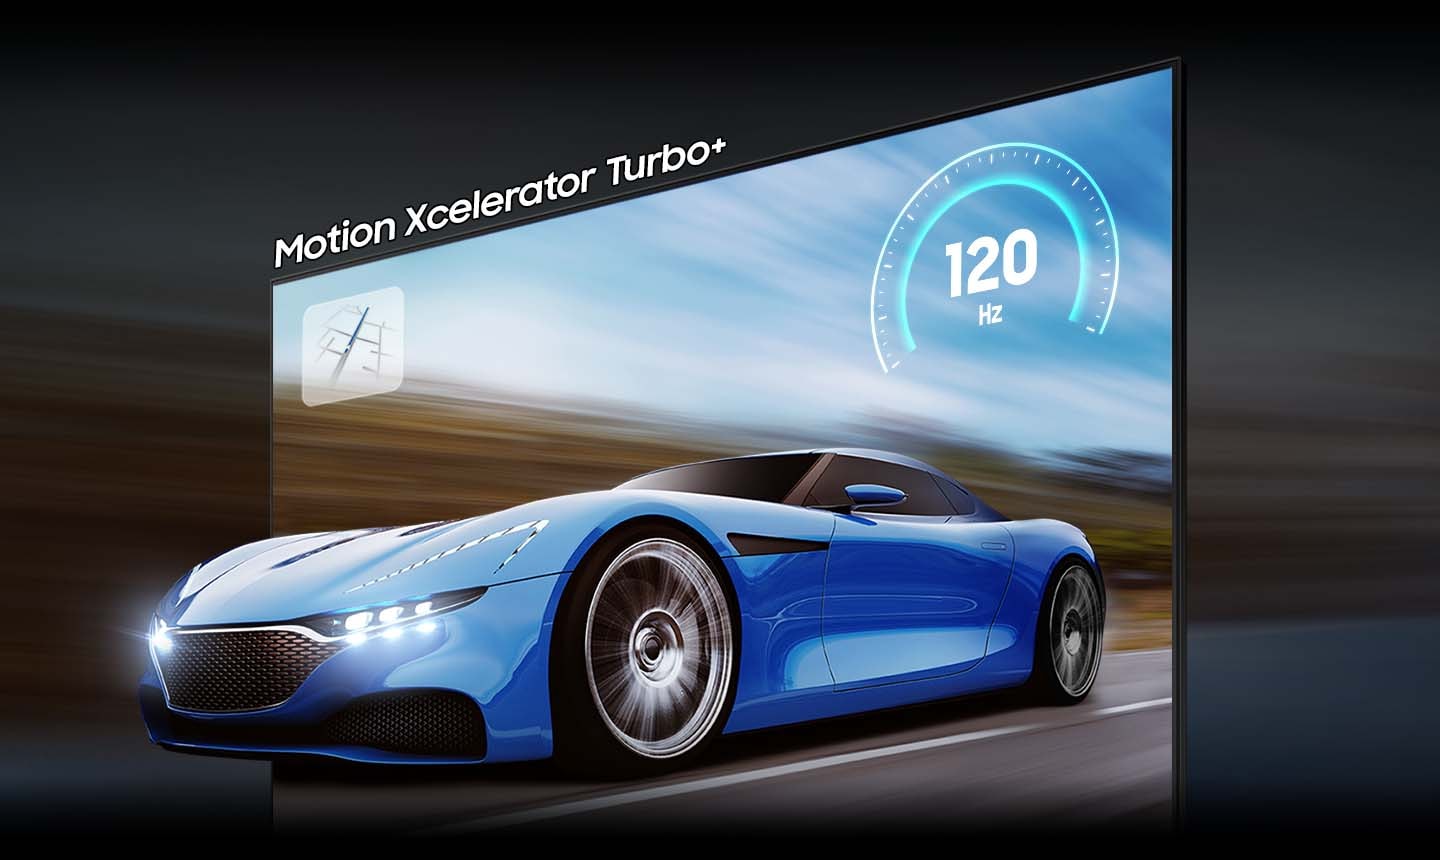 Chiếc xe màu xanh trên màn hình TV trông rõ ràng và dễ nhìn hơn trên TV QLED so với trên TV thông thường nhờ công nghệ Motion xcelerator turbo+. 120Hz được hiển thị.